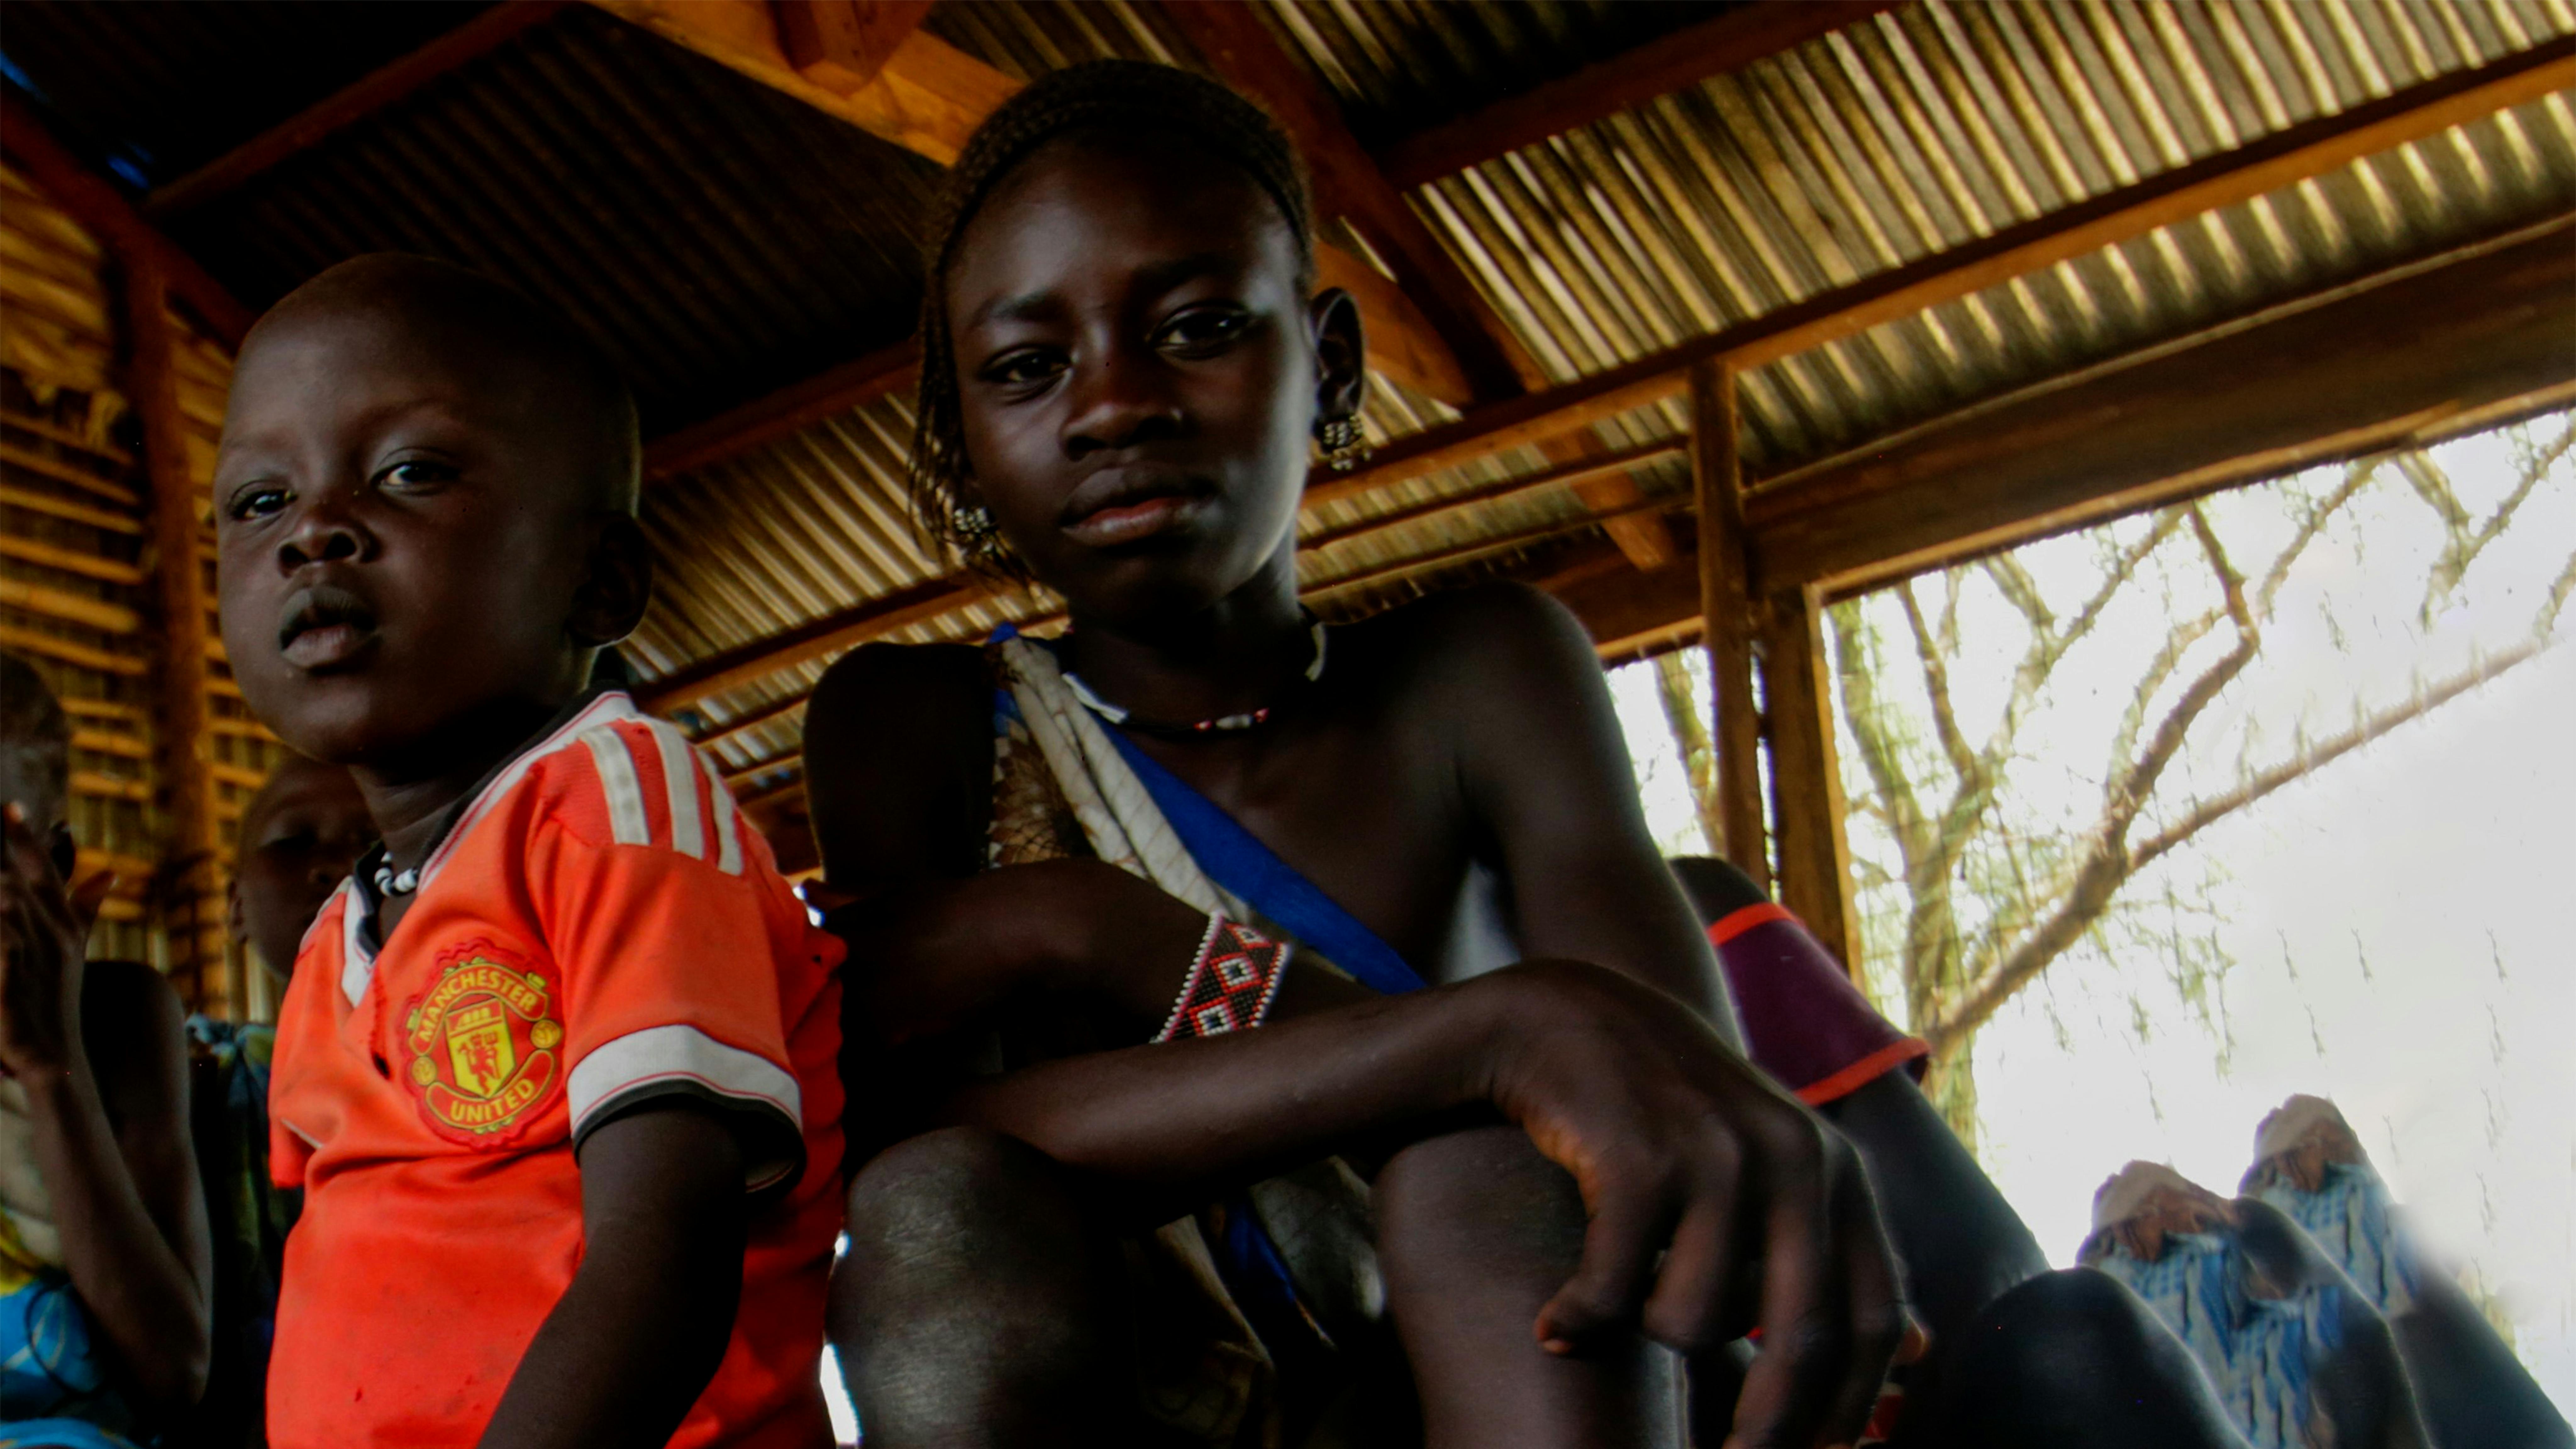 Sud Sudan, Per sfuggire alla violenza, le famiglie fuggono dai loro villaggi, lasciando dietro di sé tutti i loro averi.